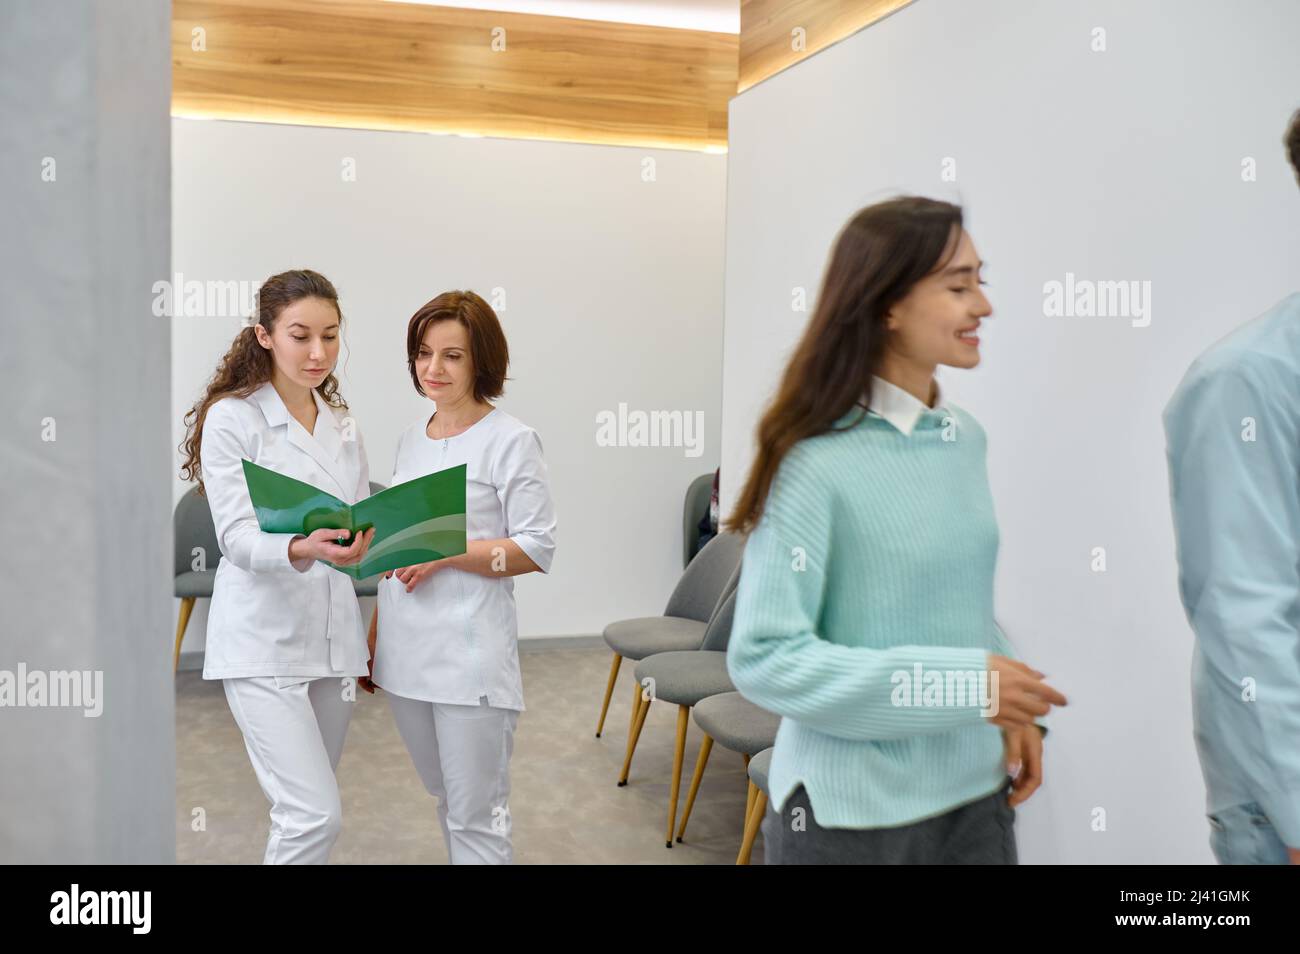 Dos enfermeras discuten el documento médico en el pasillo Foto de stock